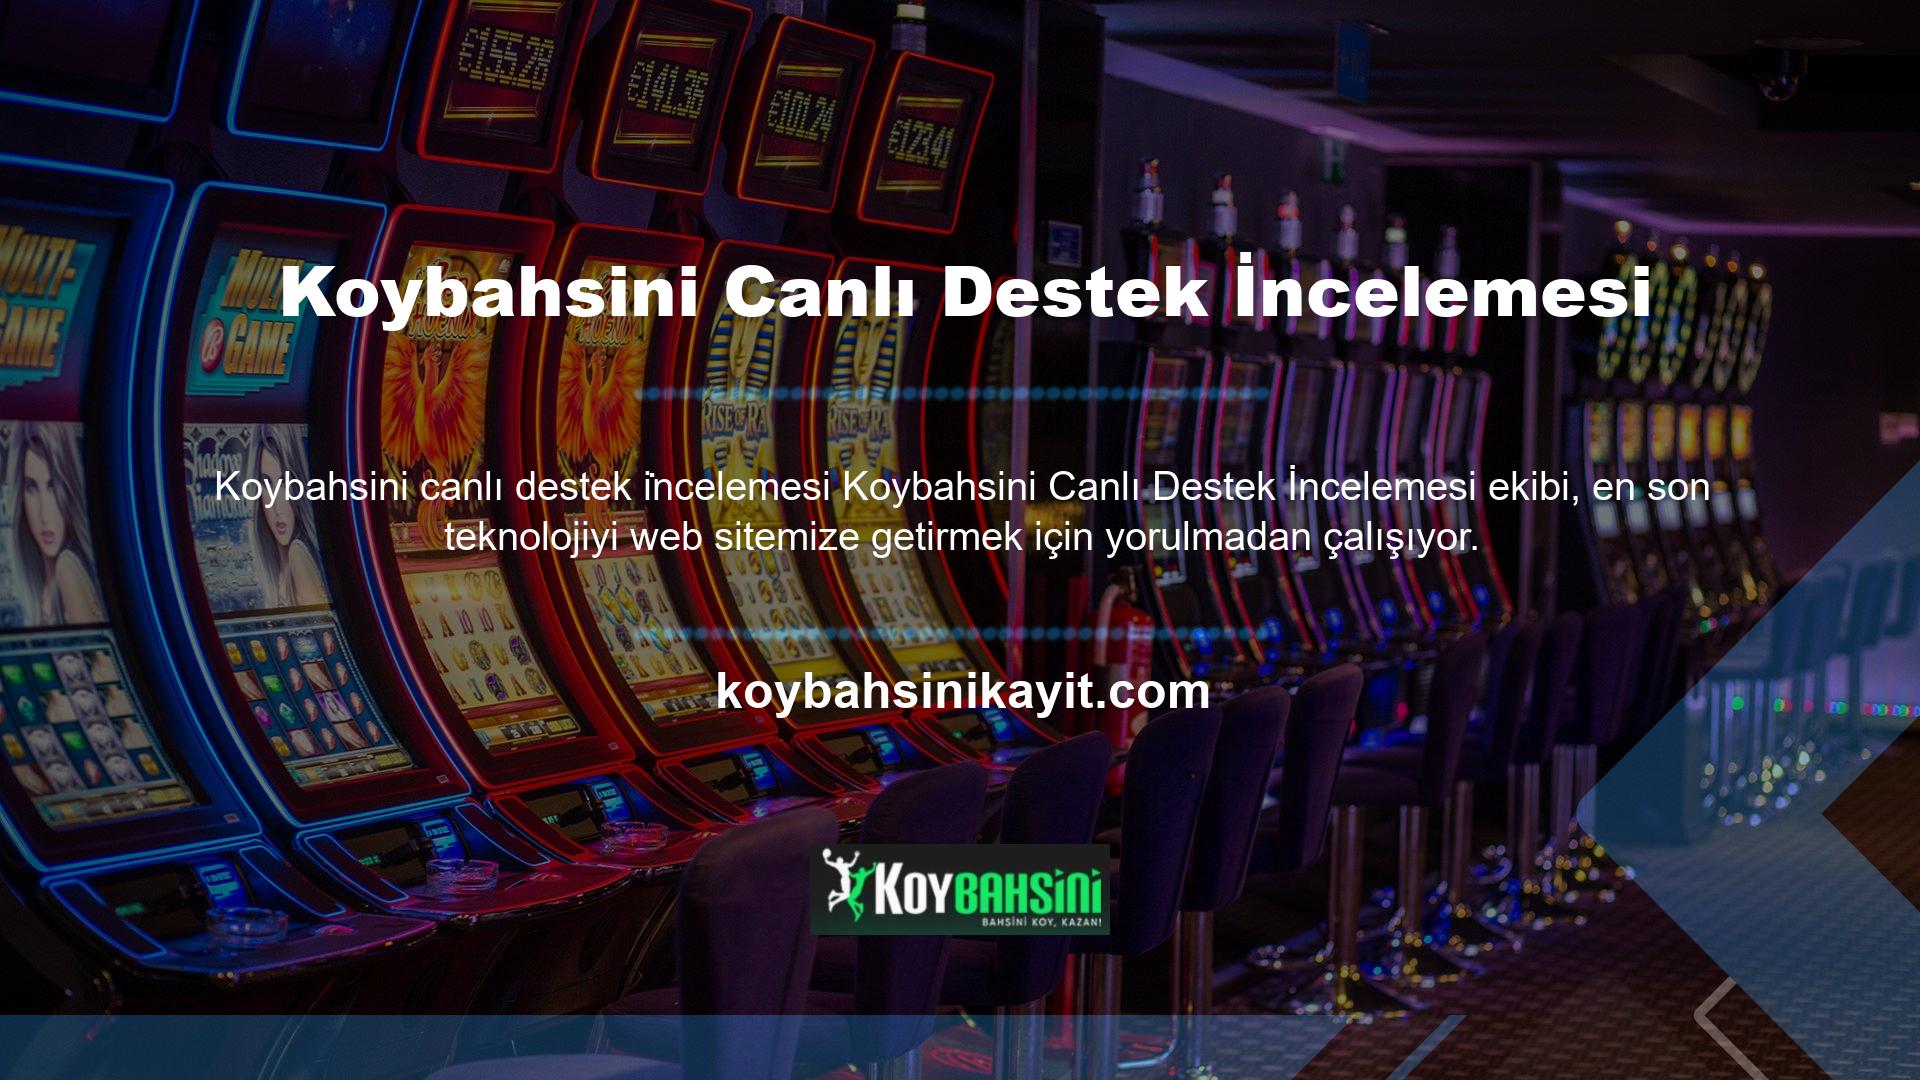 Koybahsini web sitesi bu nedenle çok modern ve açık bir geliştirme yapısı üzerine inşa edilmiştir